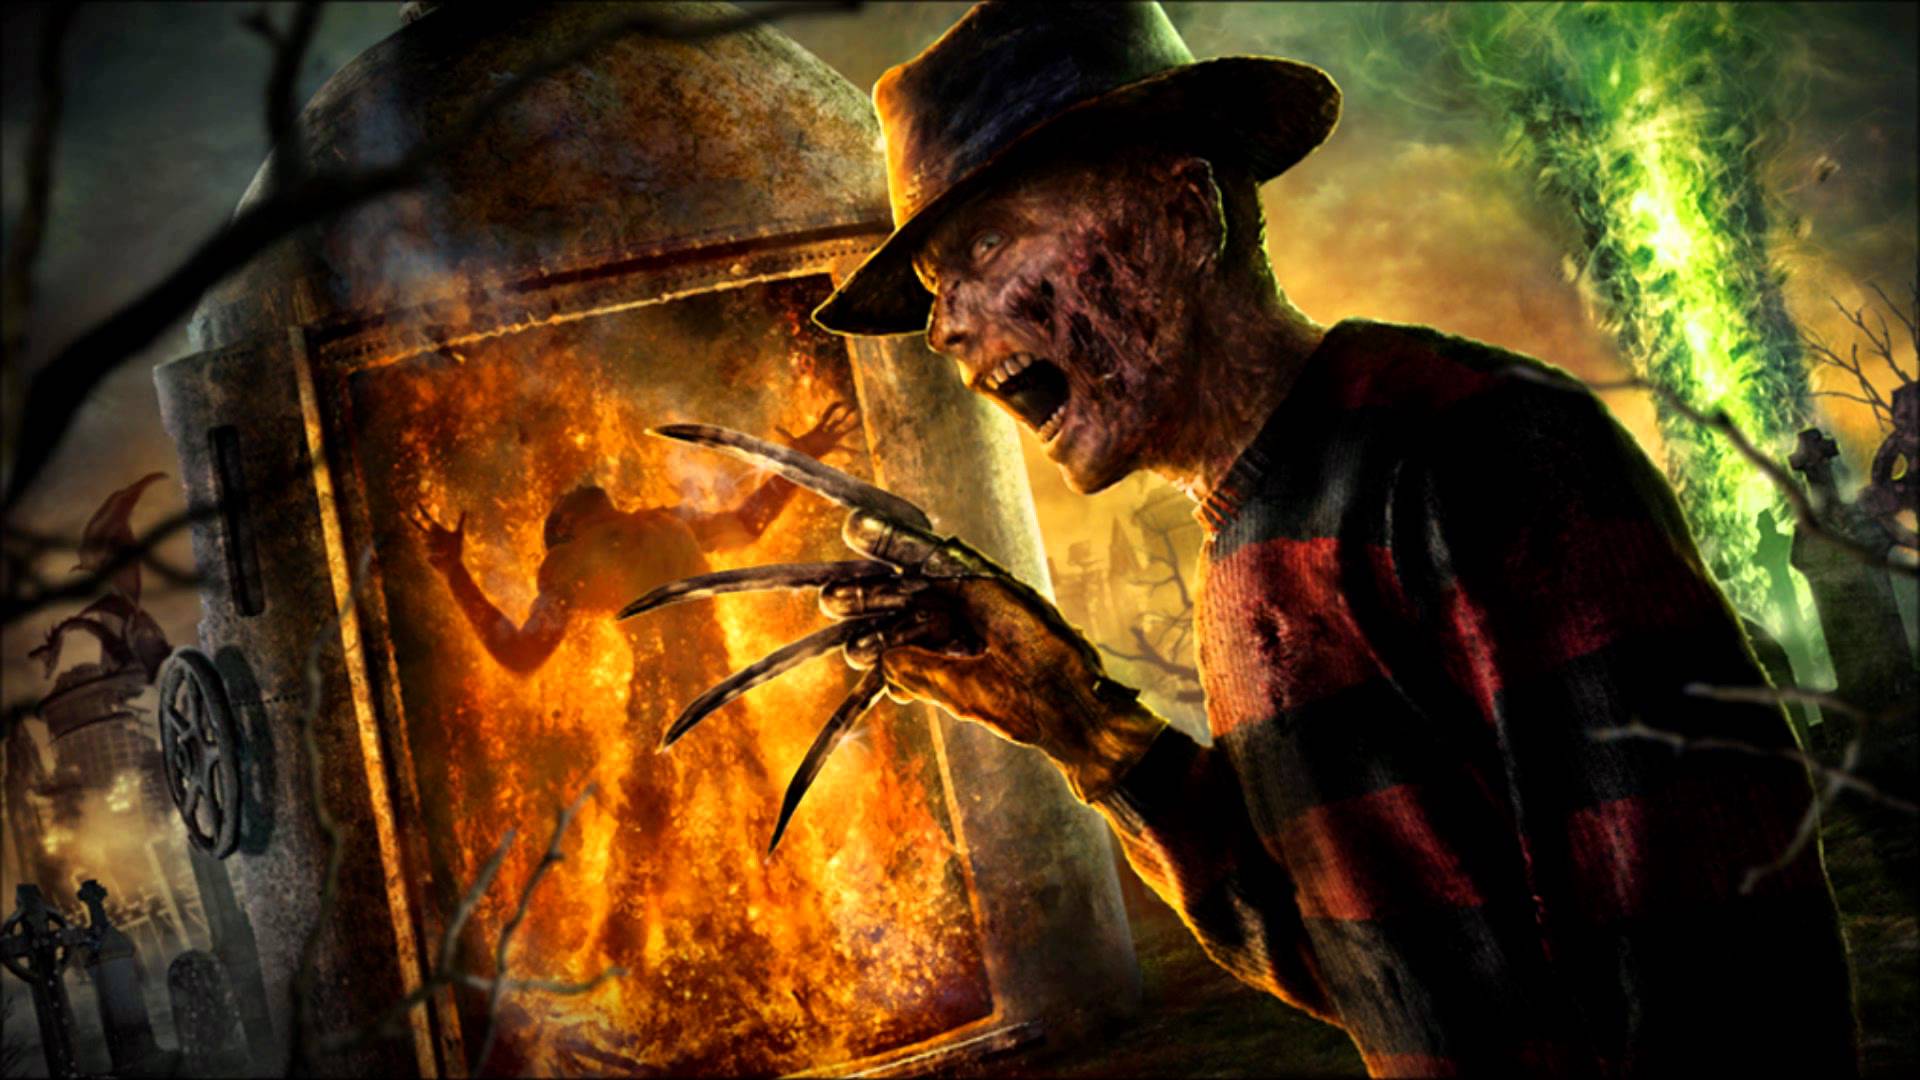 Free download Wallpaper Freddy Vs Jason Freddy Krueger Jason